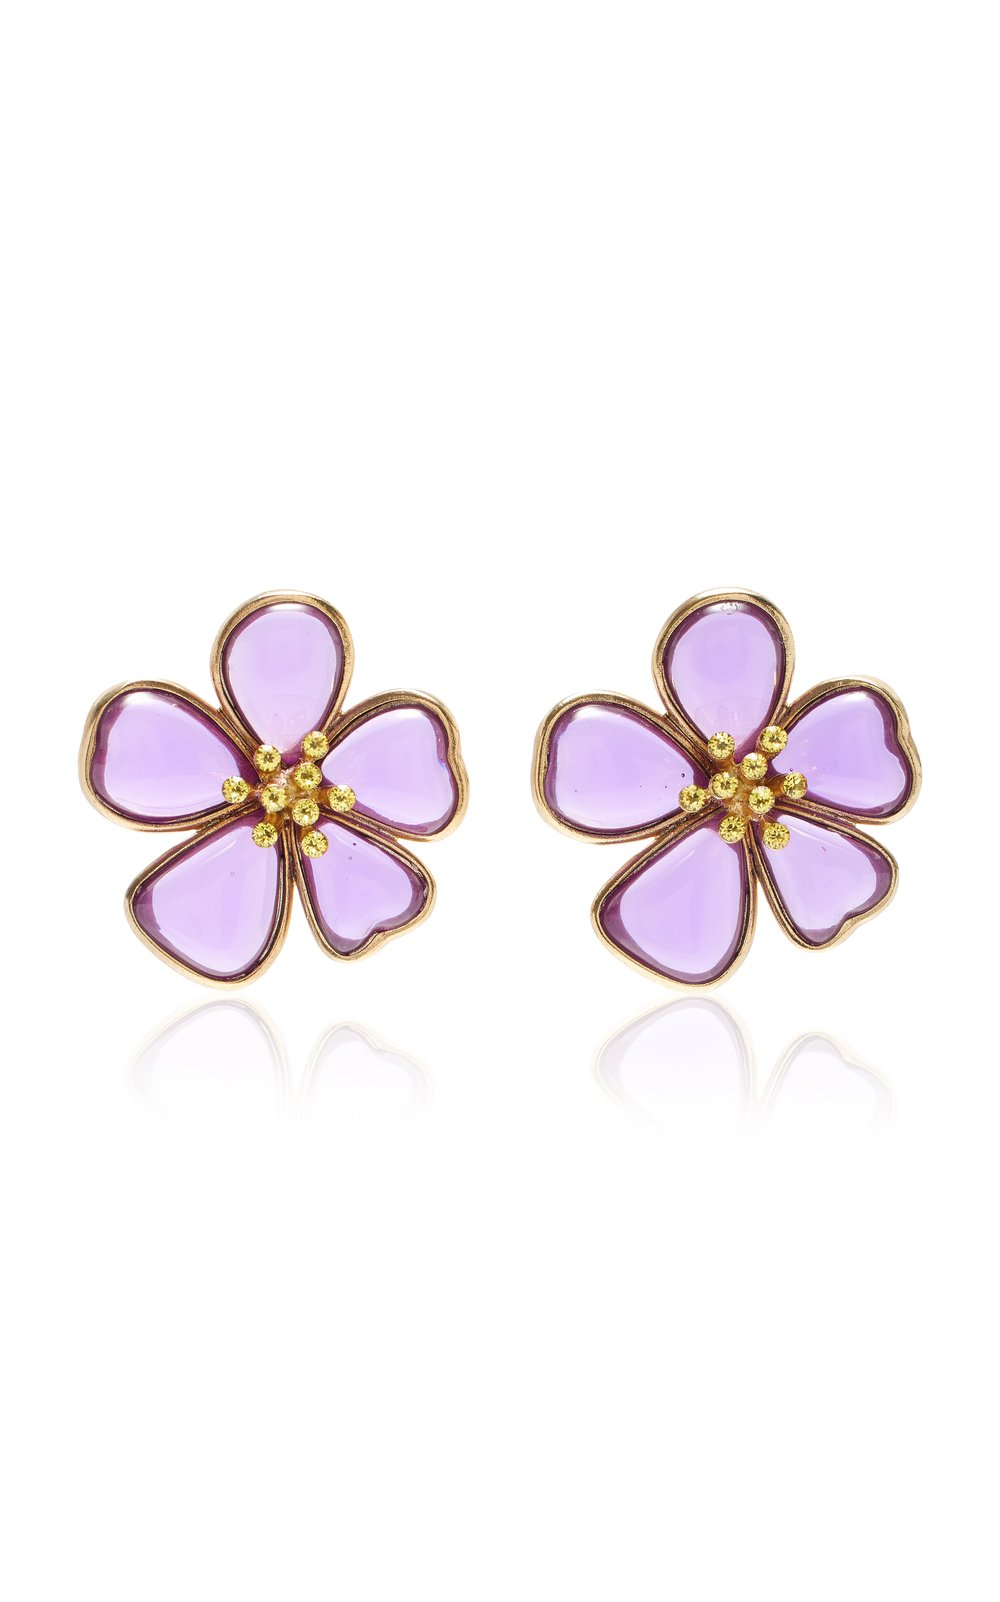 oscar-de-la-renta-purple-cloudy-resin-flower-earrings.jpg